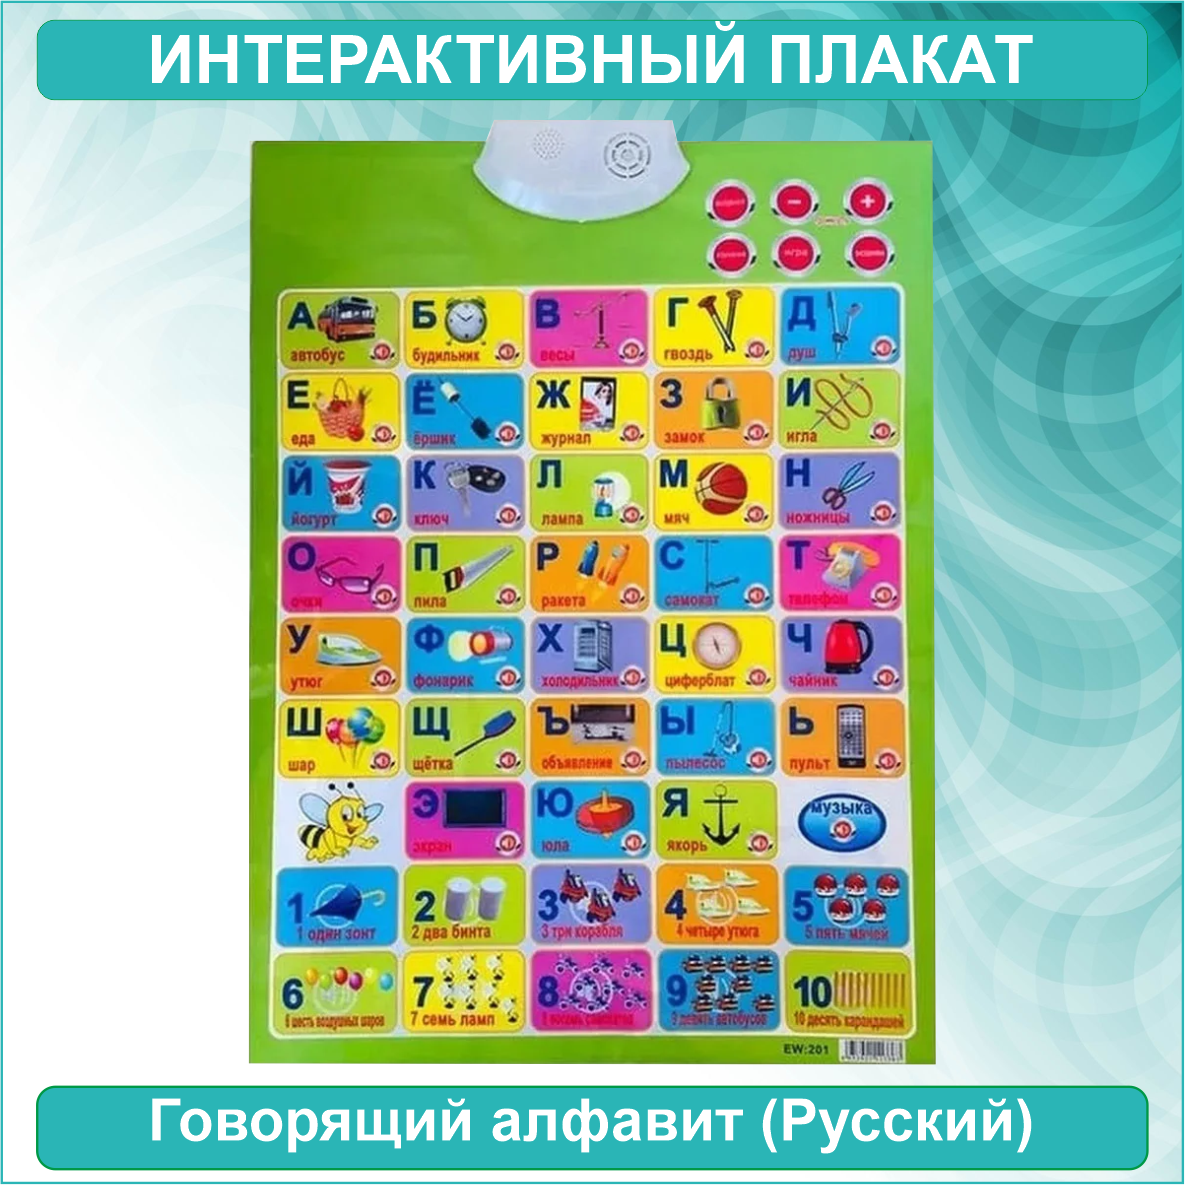 Говорящий русский алфавит (Интерактивный плакат)